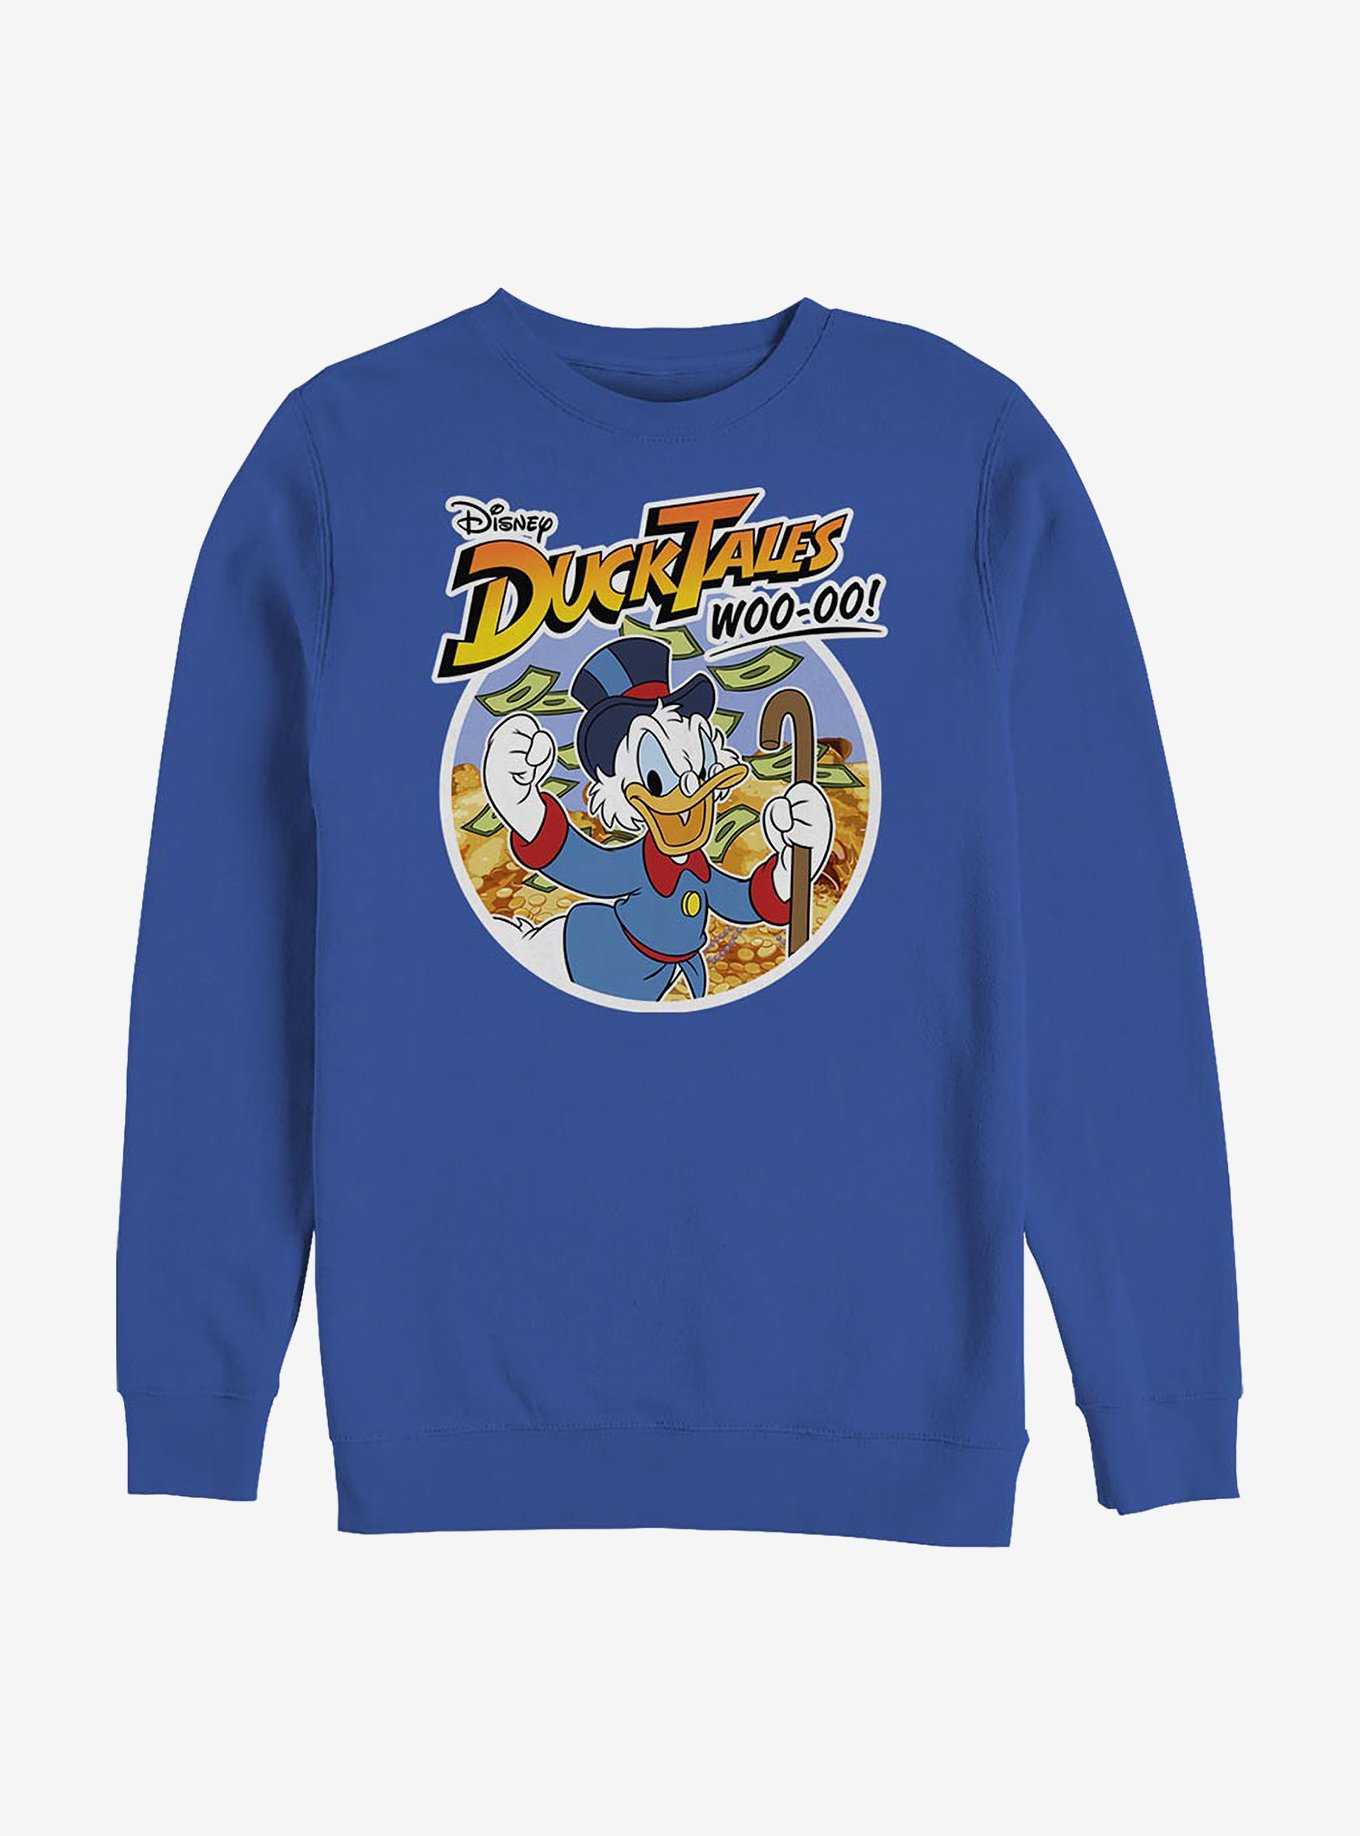 Disney Ducktales Scrooge Woo-oo Crew Sweatshirt, , hi-res